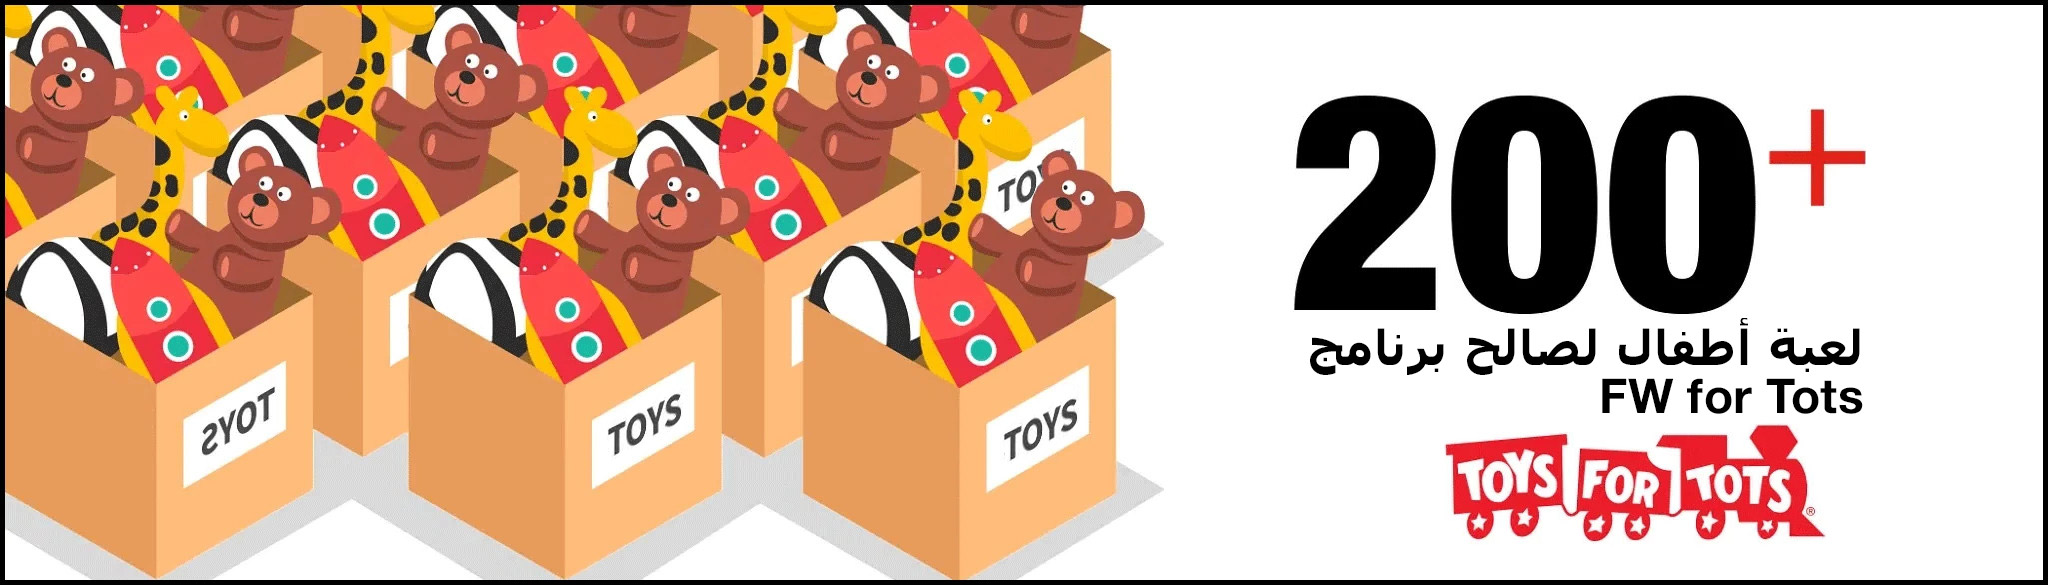 تبرع موظفو شركة Flowserve بأكثر من 200 لعبة أطفال إلى Dallas Fort Worth Toys for Tots